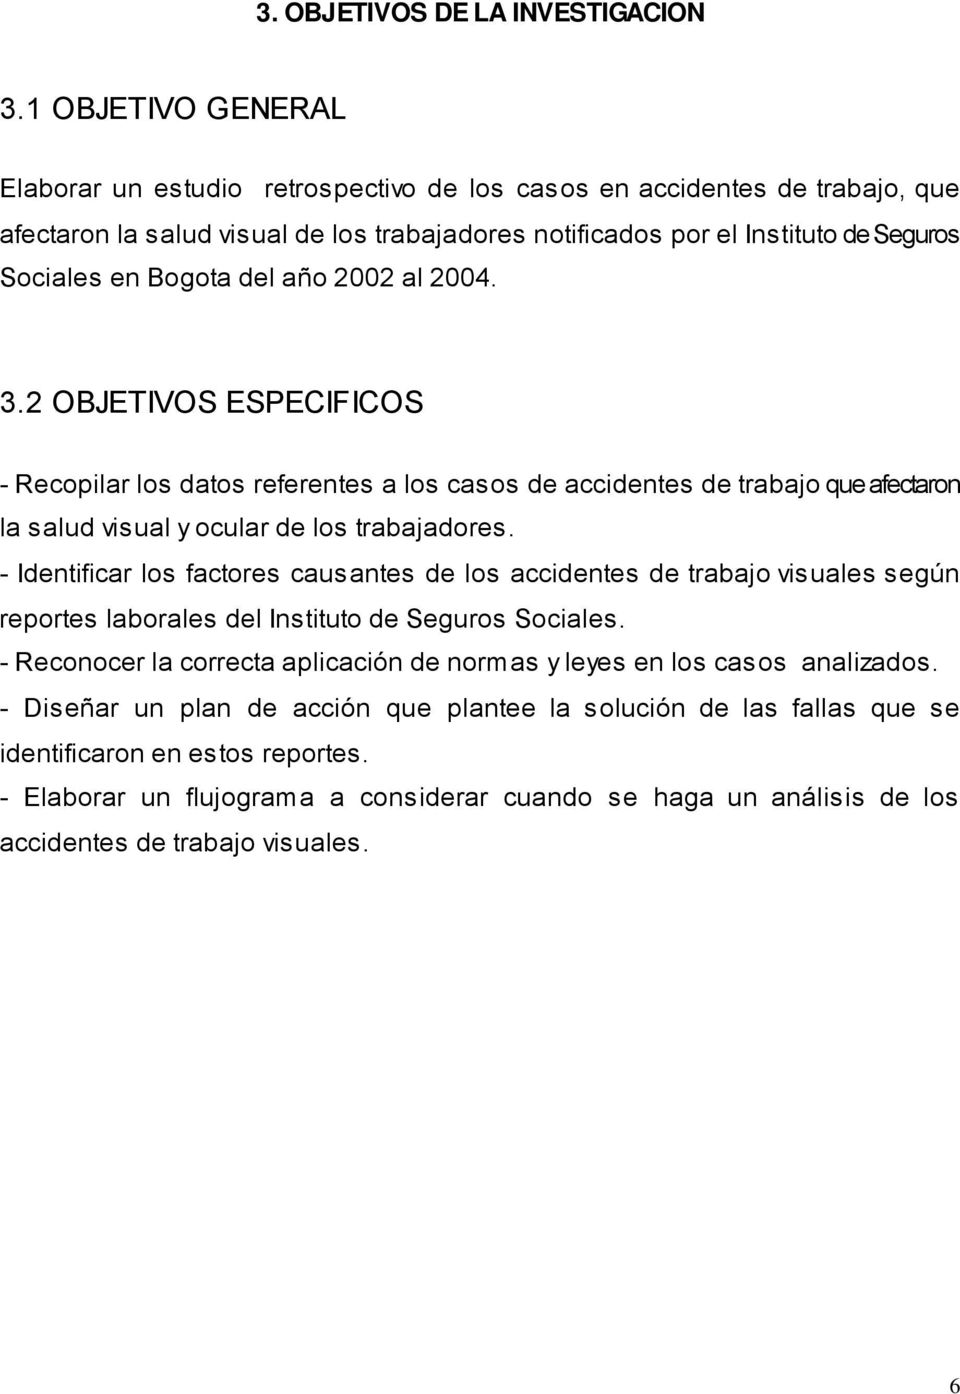 Bogota del año 2002 al 2004. 3.2 OBJETIVOS ESPECIFICOS - Recopilar los datos referentes a los casos de accidentes de trabajo que afectaron la salud visual y ocular de los trabajadores.